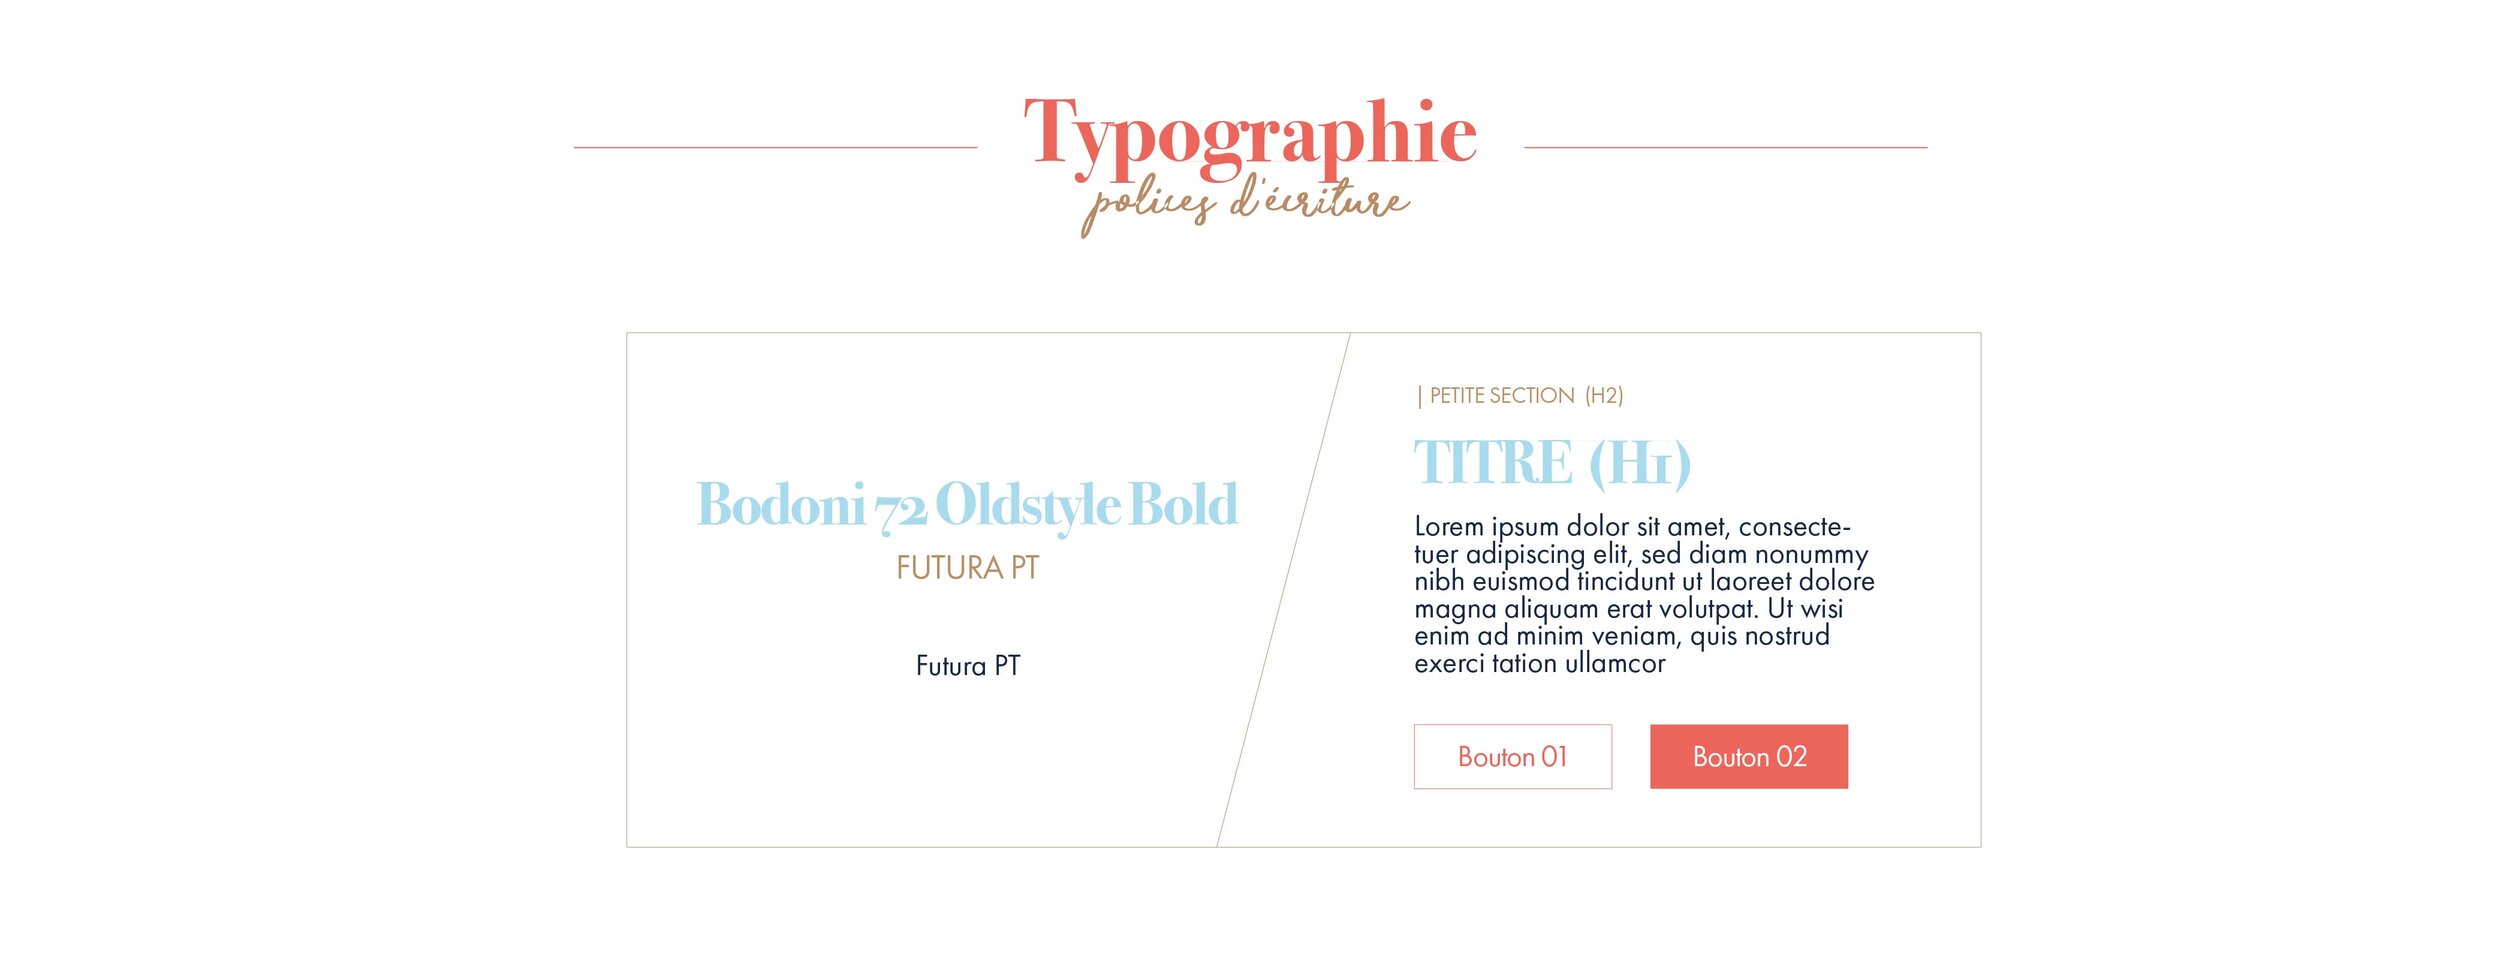 Clothness le choix de la typographie